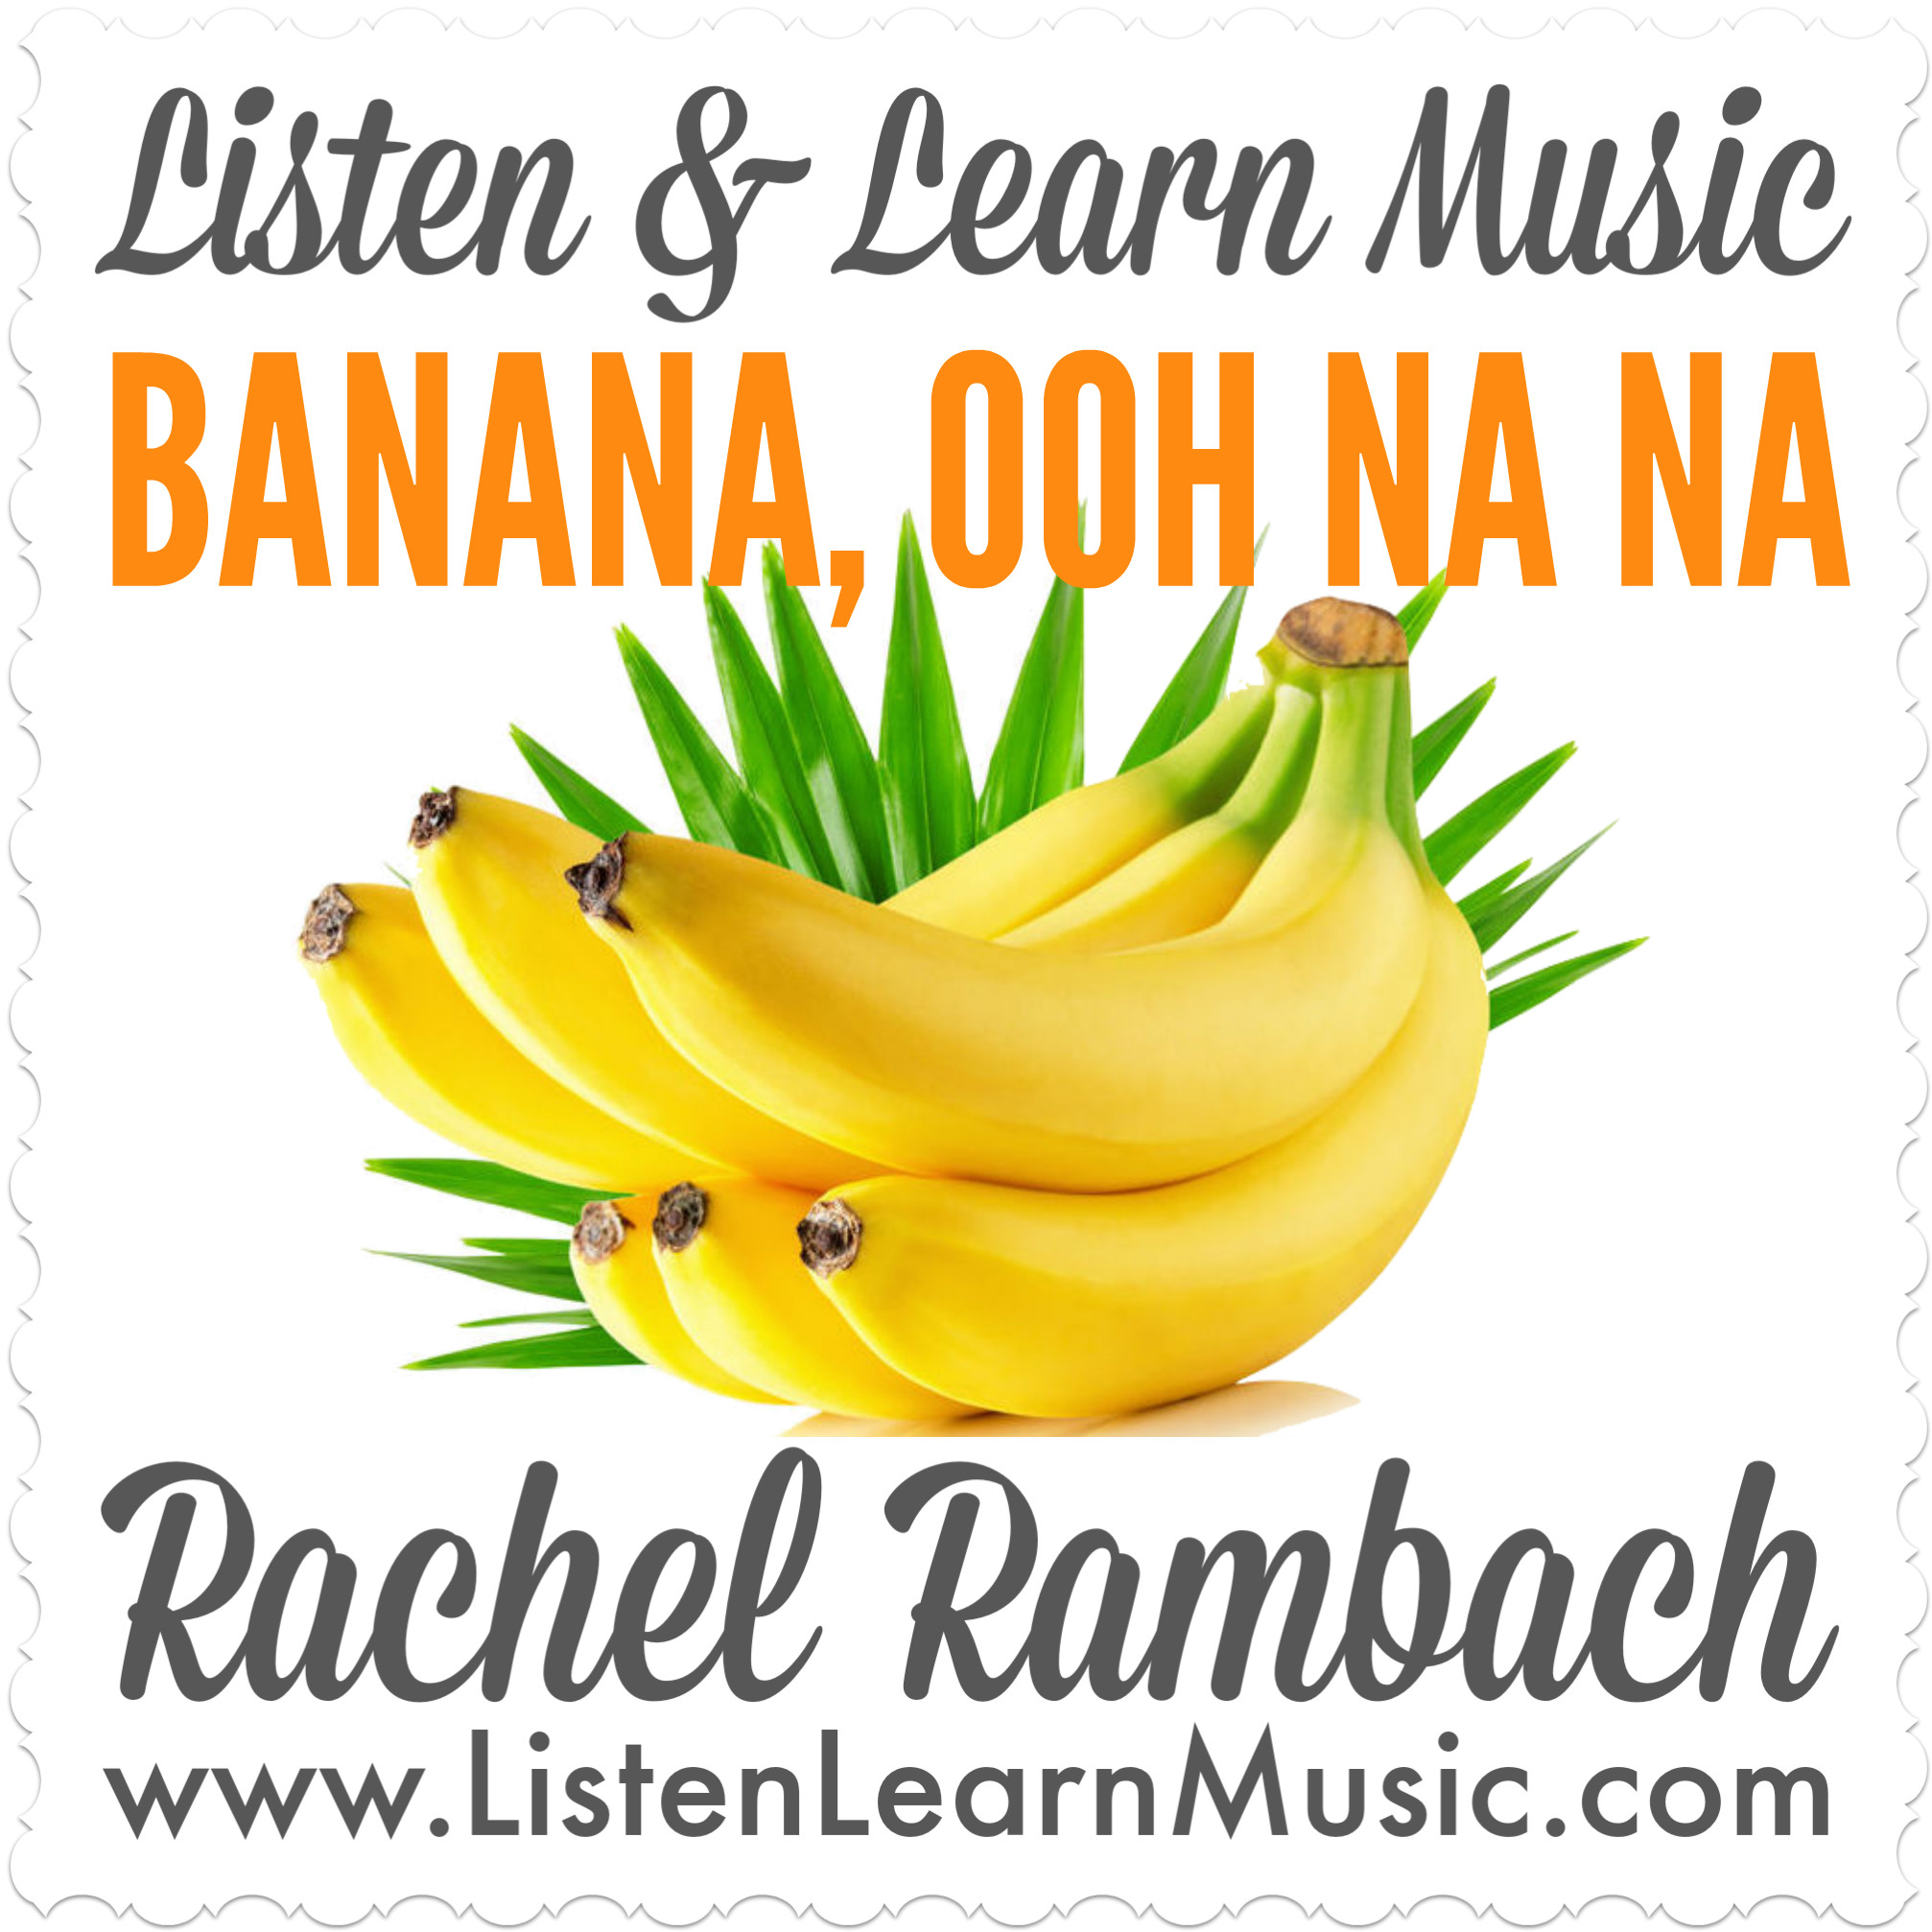 As Melhores Músicas para Jogar - playlist by Bananas Music